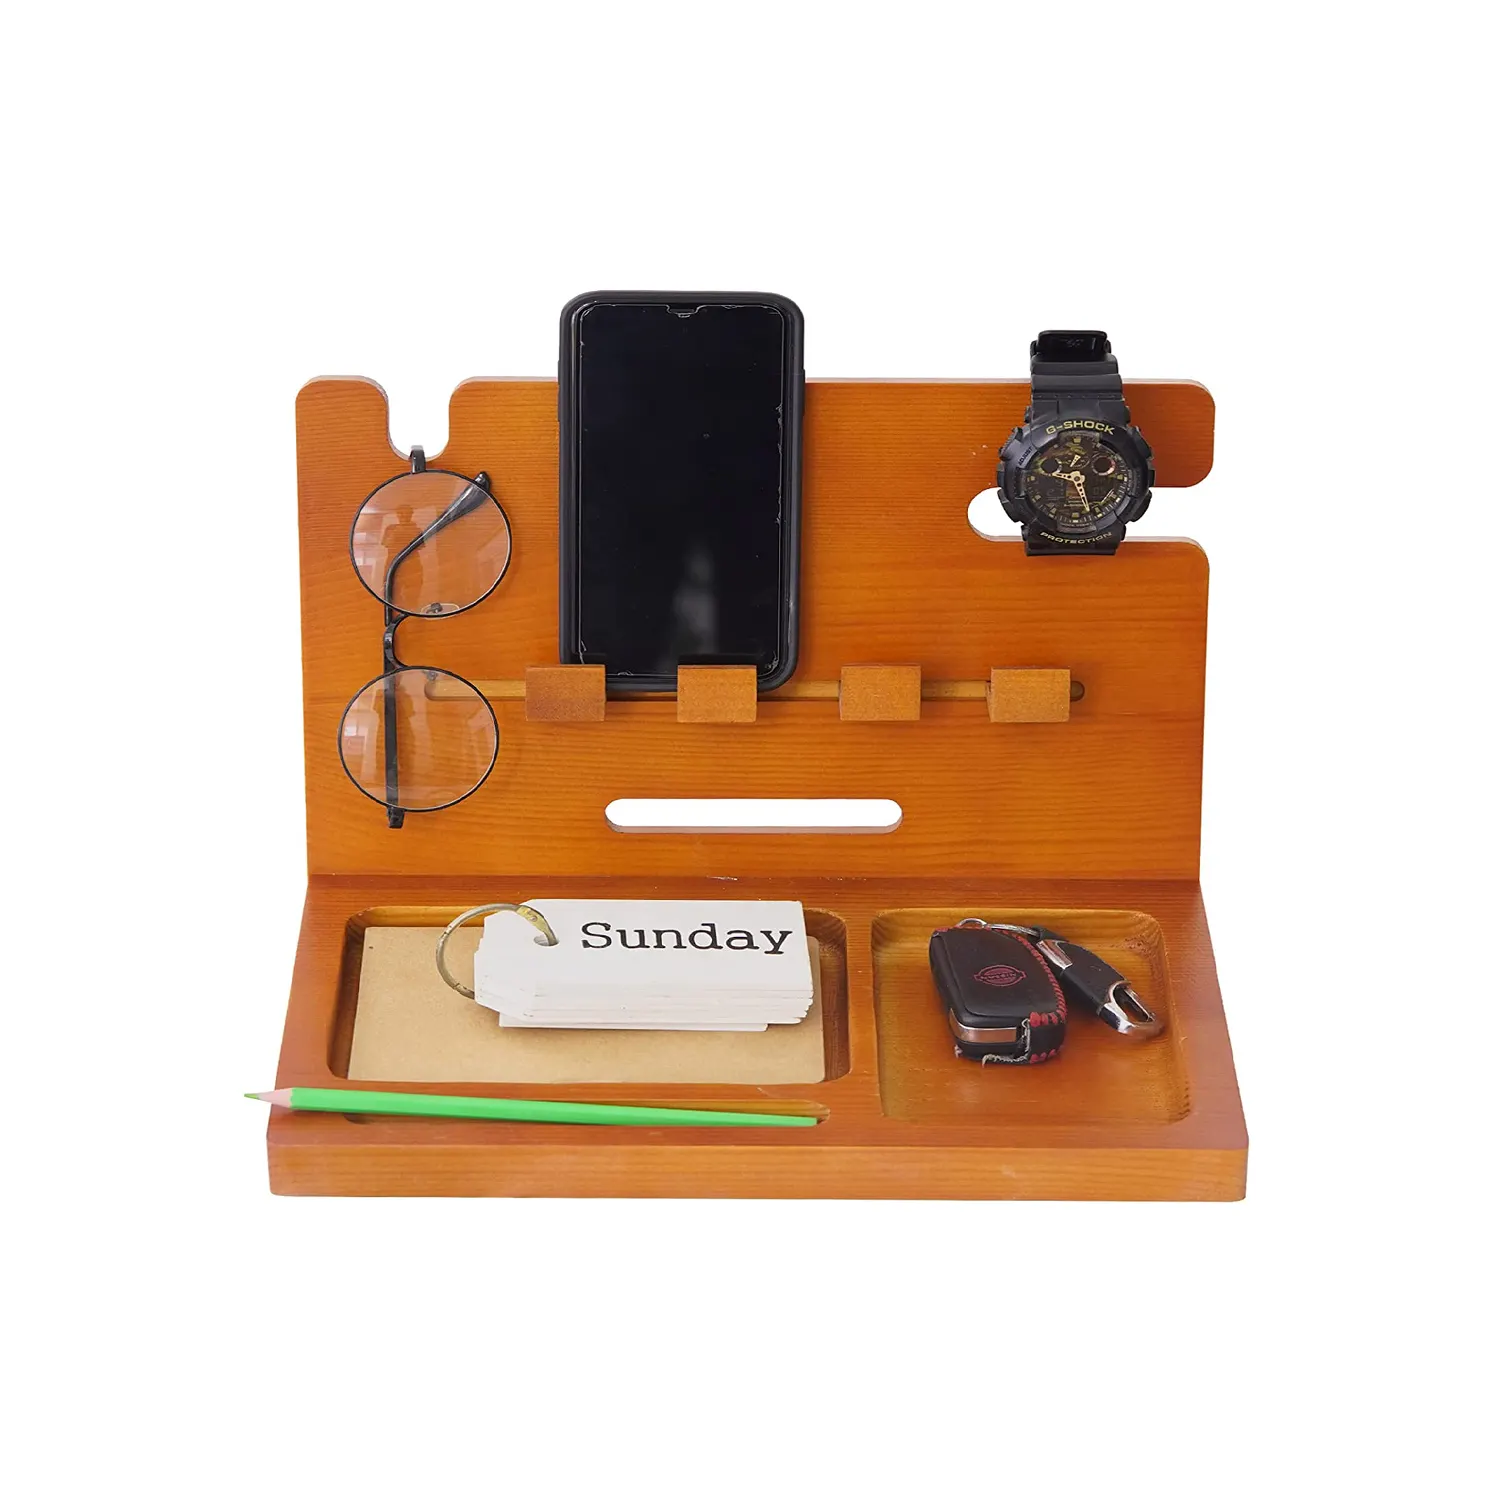 Taşınabilir bambu telefon standı dayanıklı Docking Station ile anahtar tutucu cüzdan standı toptan özel ahşap masa komidin organizatör